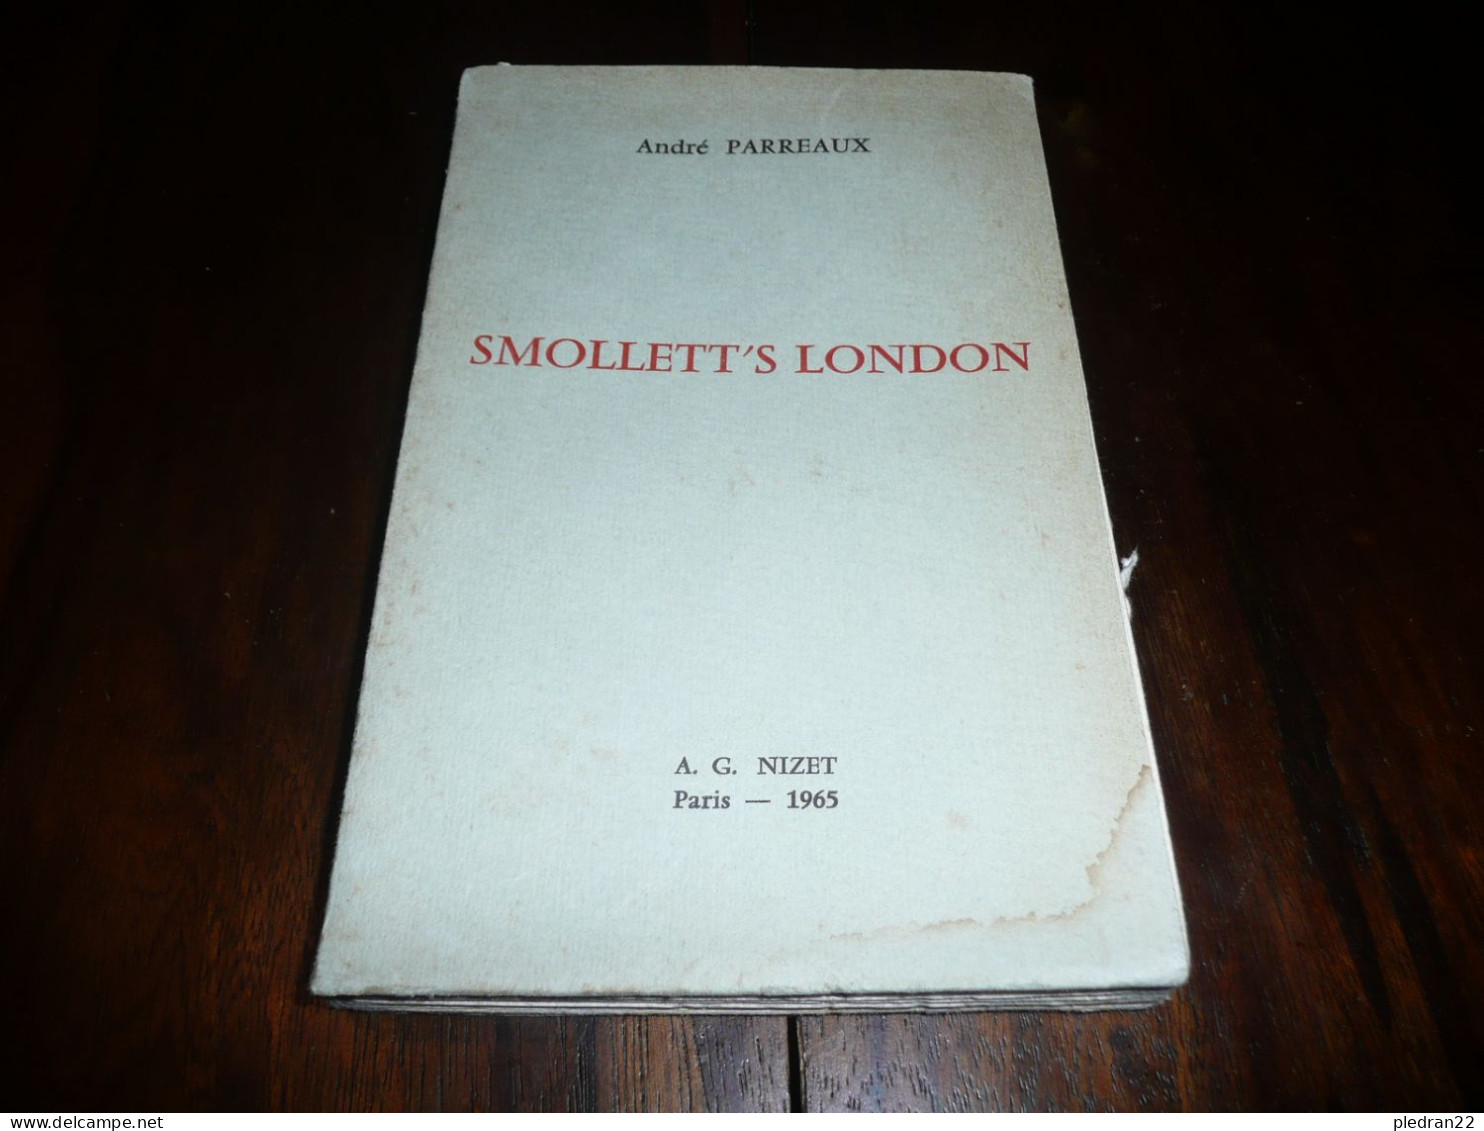 ANDRE PARREAUX SMOLLETT'S LONDON SERIE DE COURS DE LITTERATURE A L' UNIVERSITE DE PARIS EDITIONS NIZET 1965 - Culture